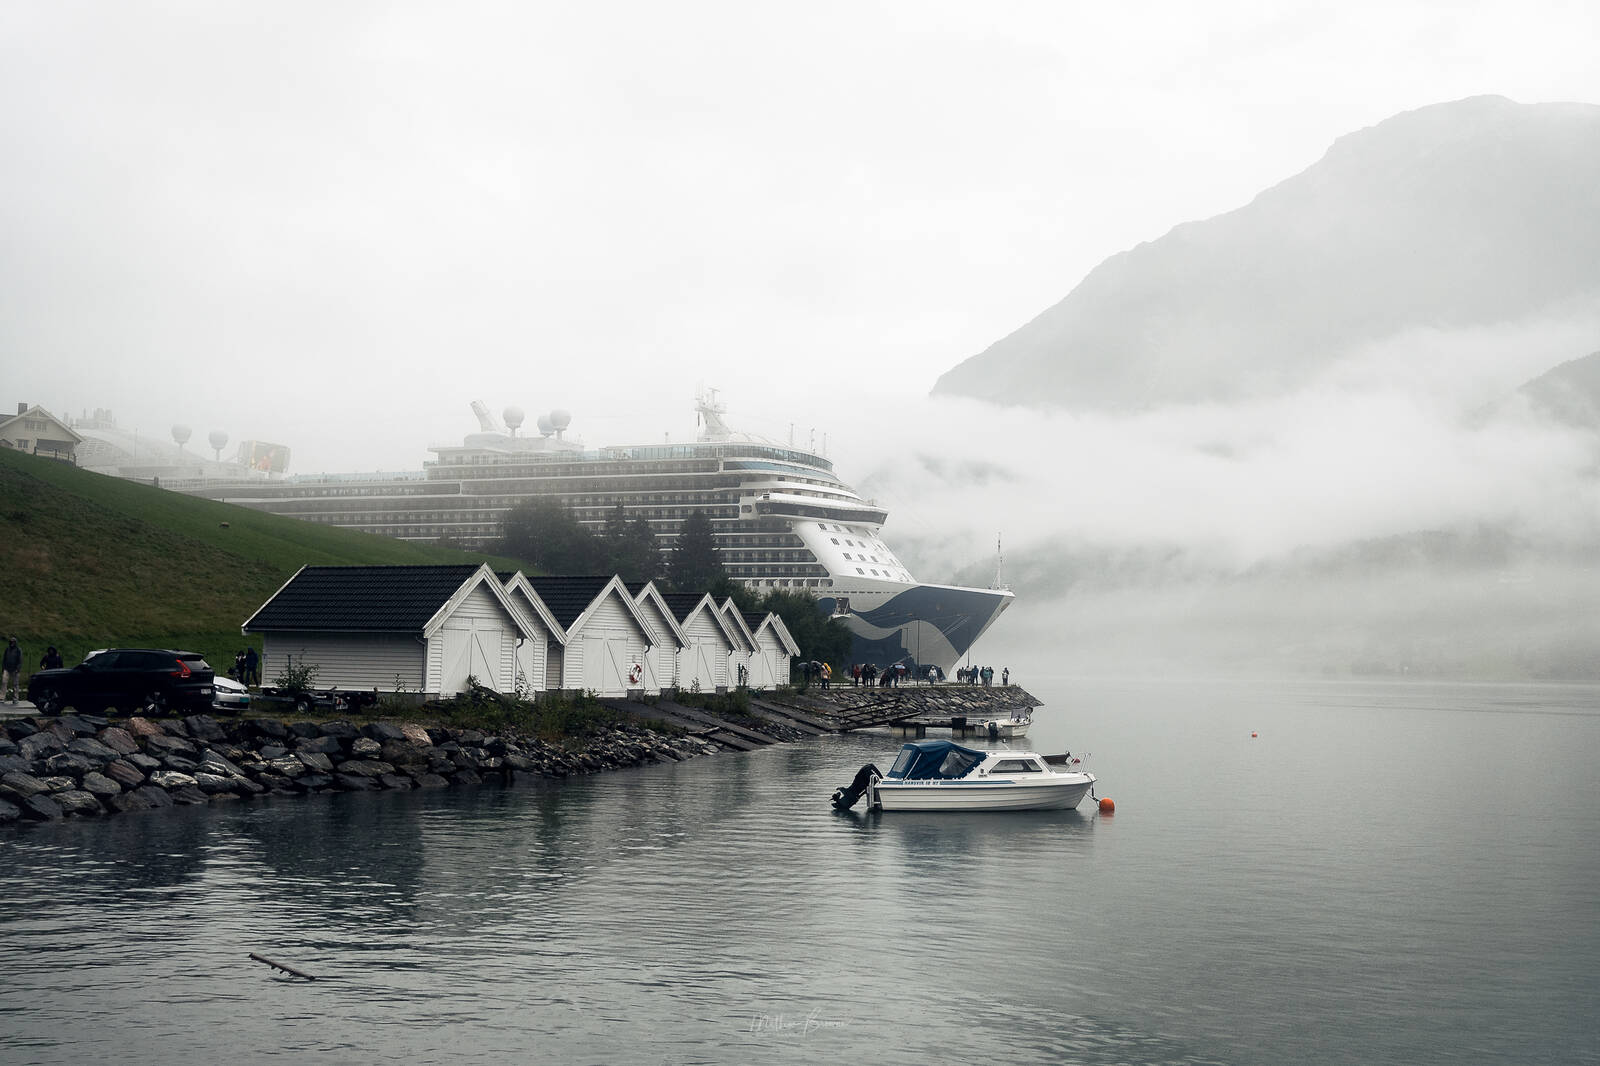 Image of Skjolden Cruise Terminal by Mathew Browne